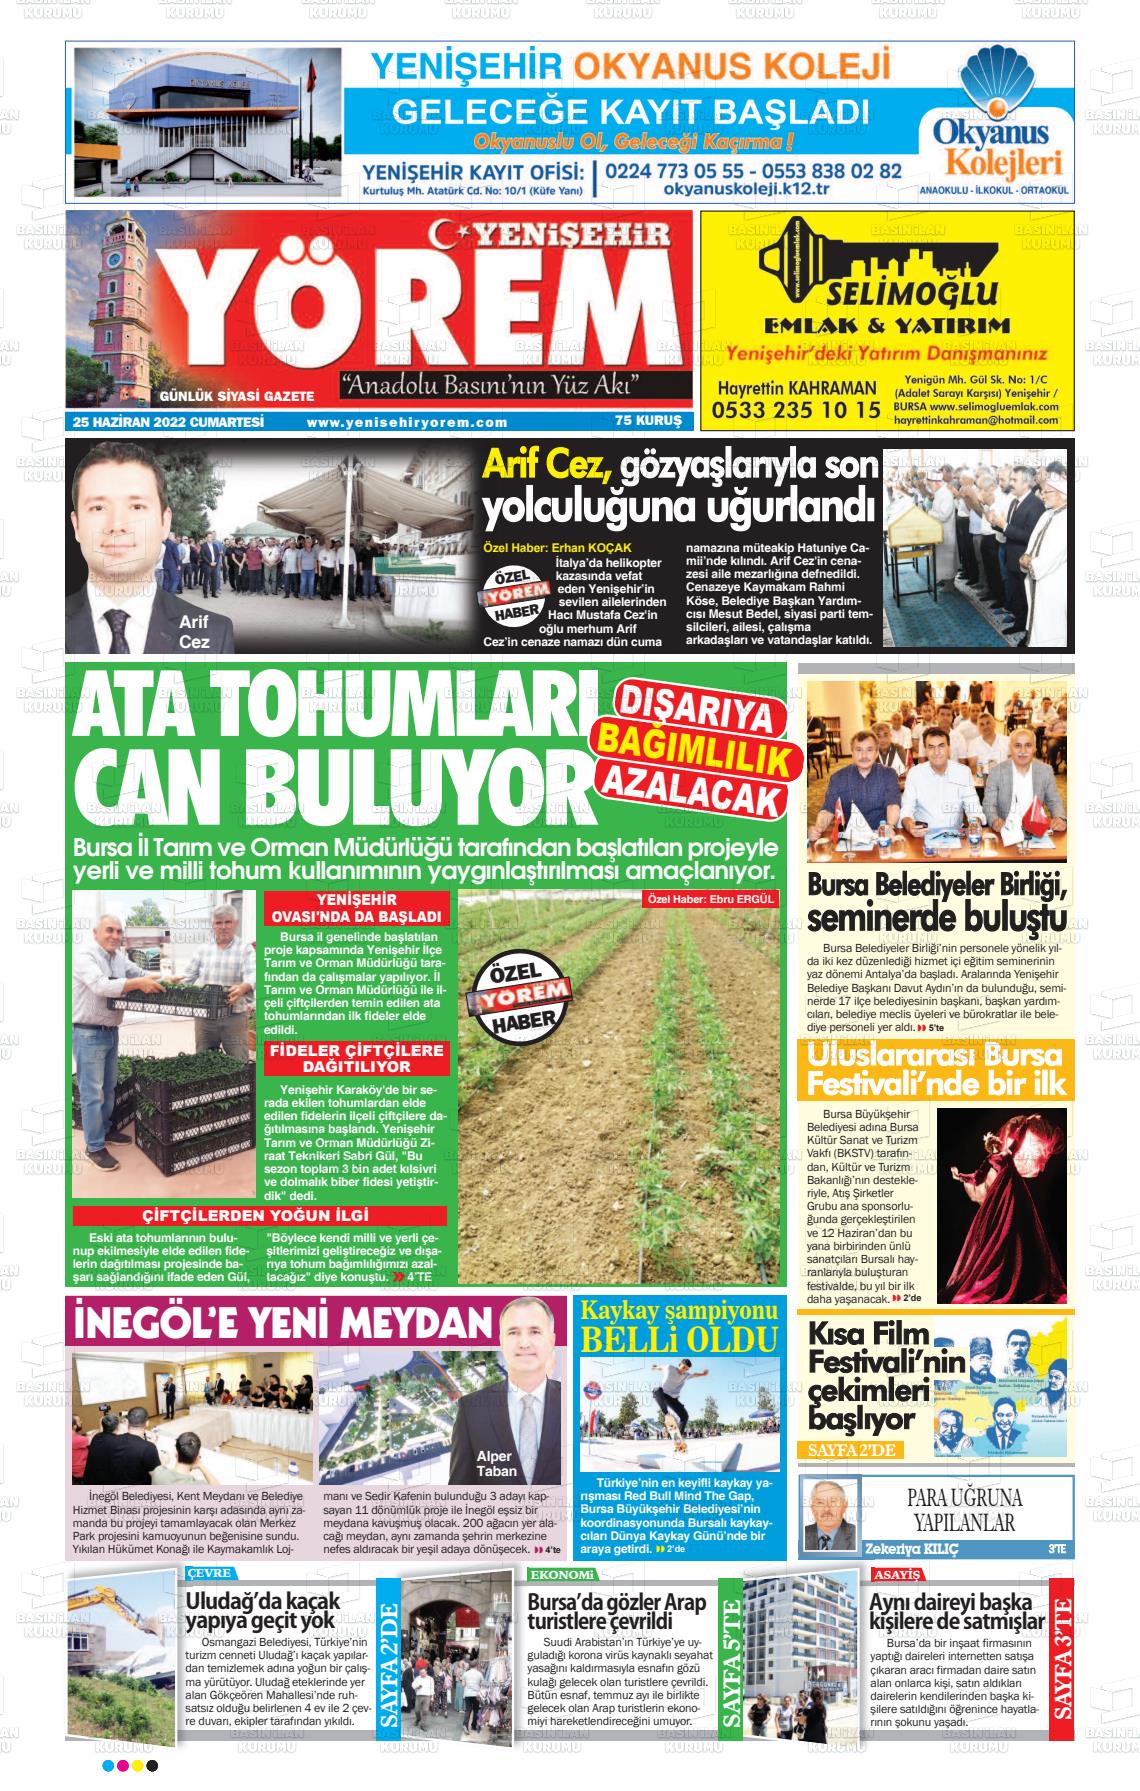 25 Haziran 2022 Yenişehir Yörem Gazete Manşeti